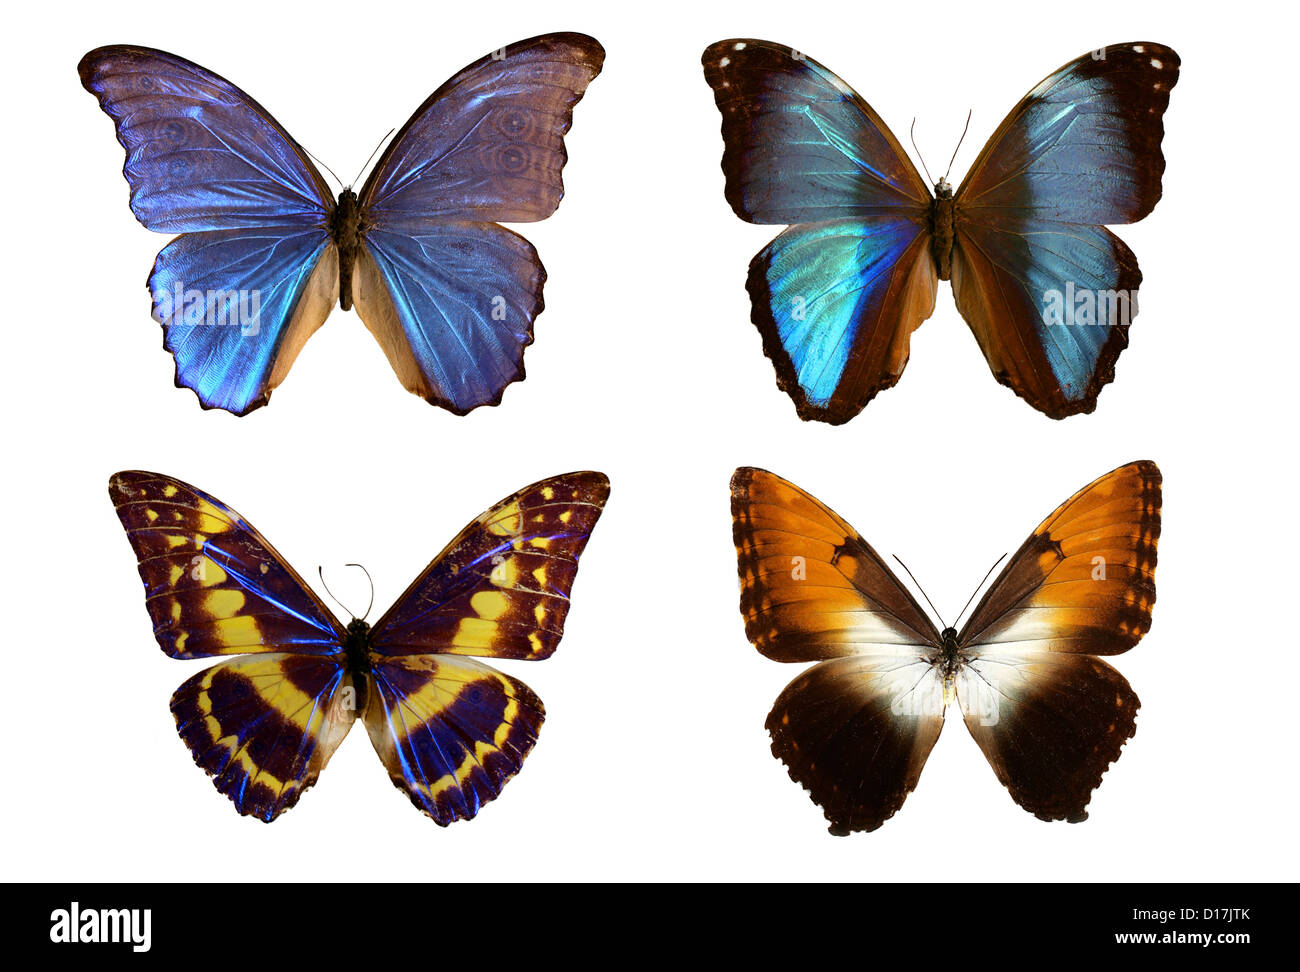 Morpho Butterflies, Morpho godarti,  Morpho deidamia, Morpho cypress cyanides, and Morpho hecuba, Nymphalidae. South America. Stock Photo